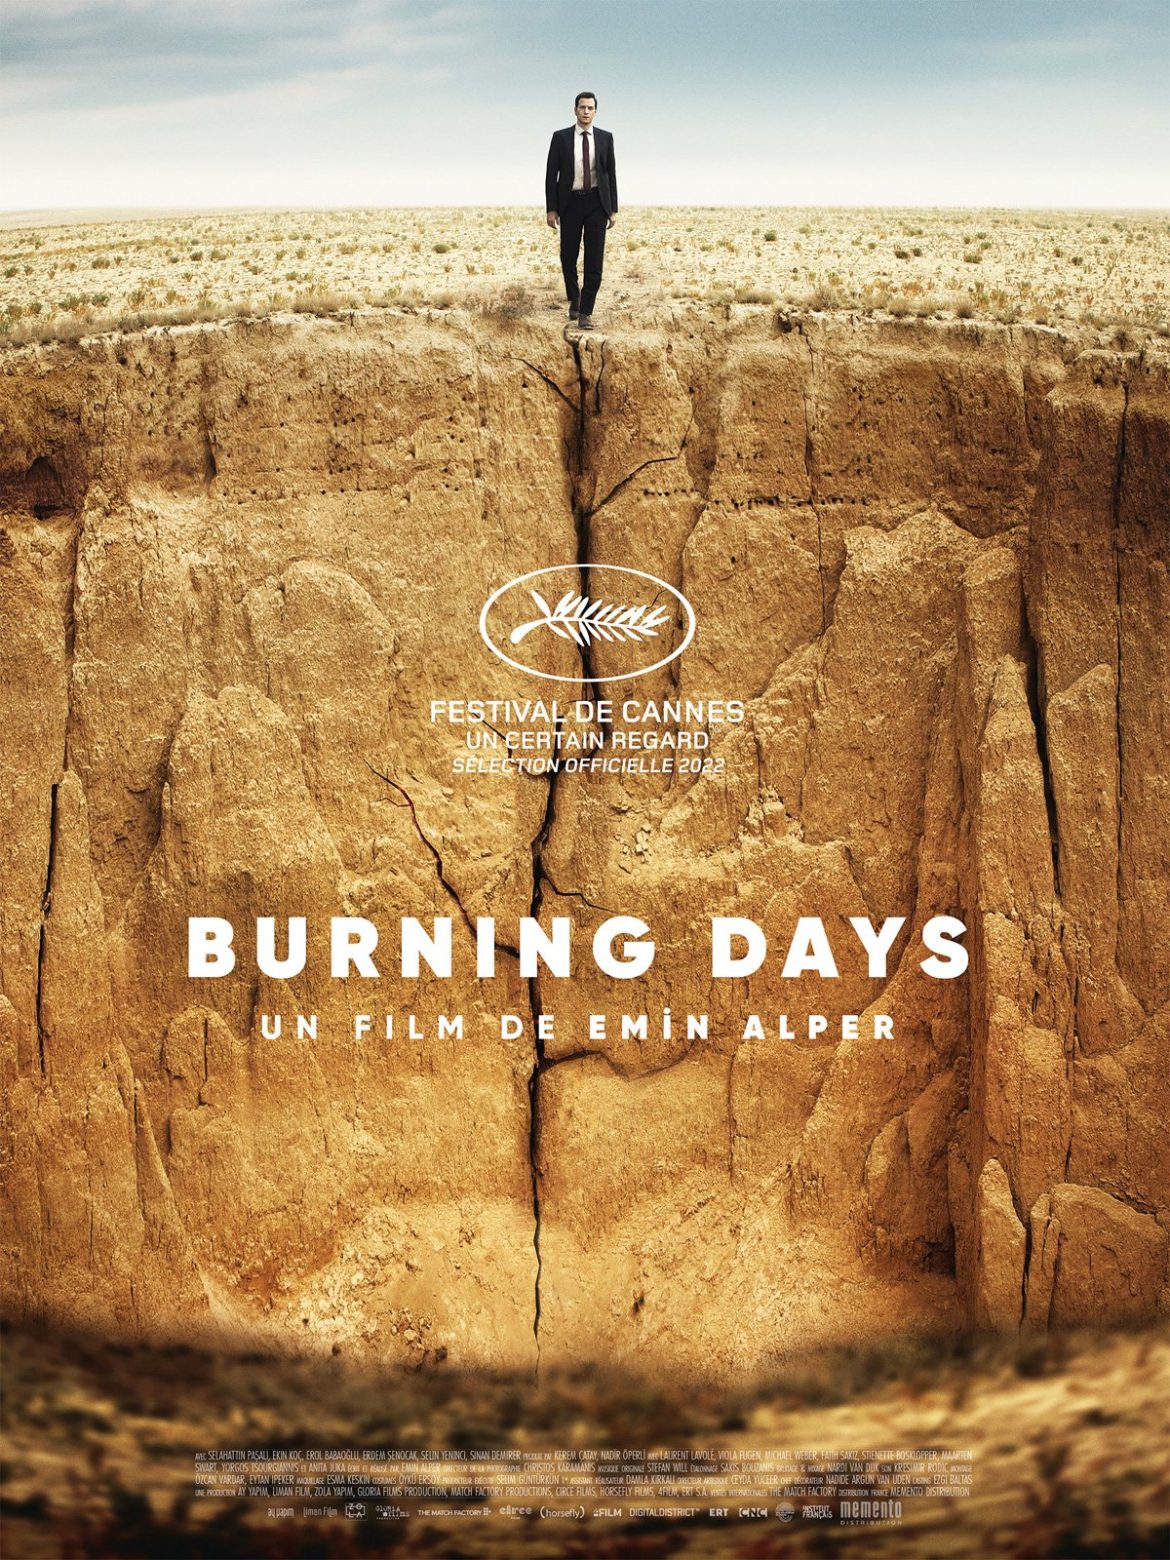 LES FILMS DU SUD présentent : Burning days